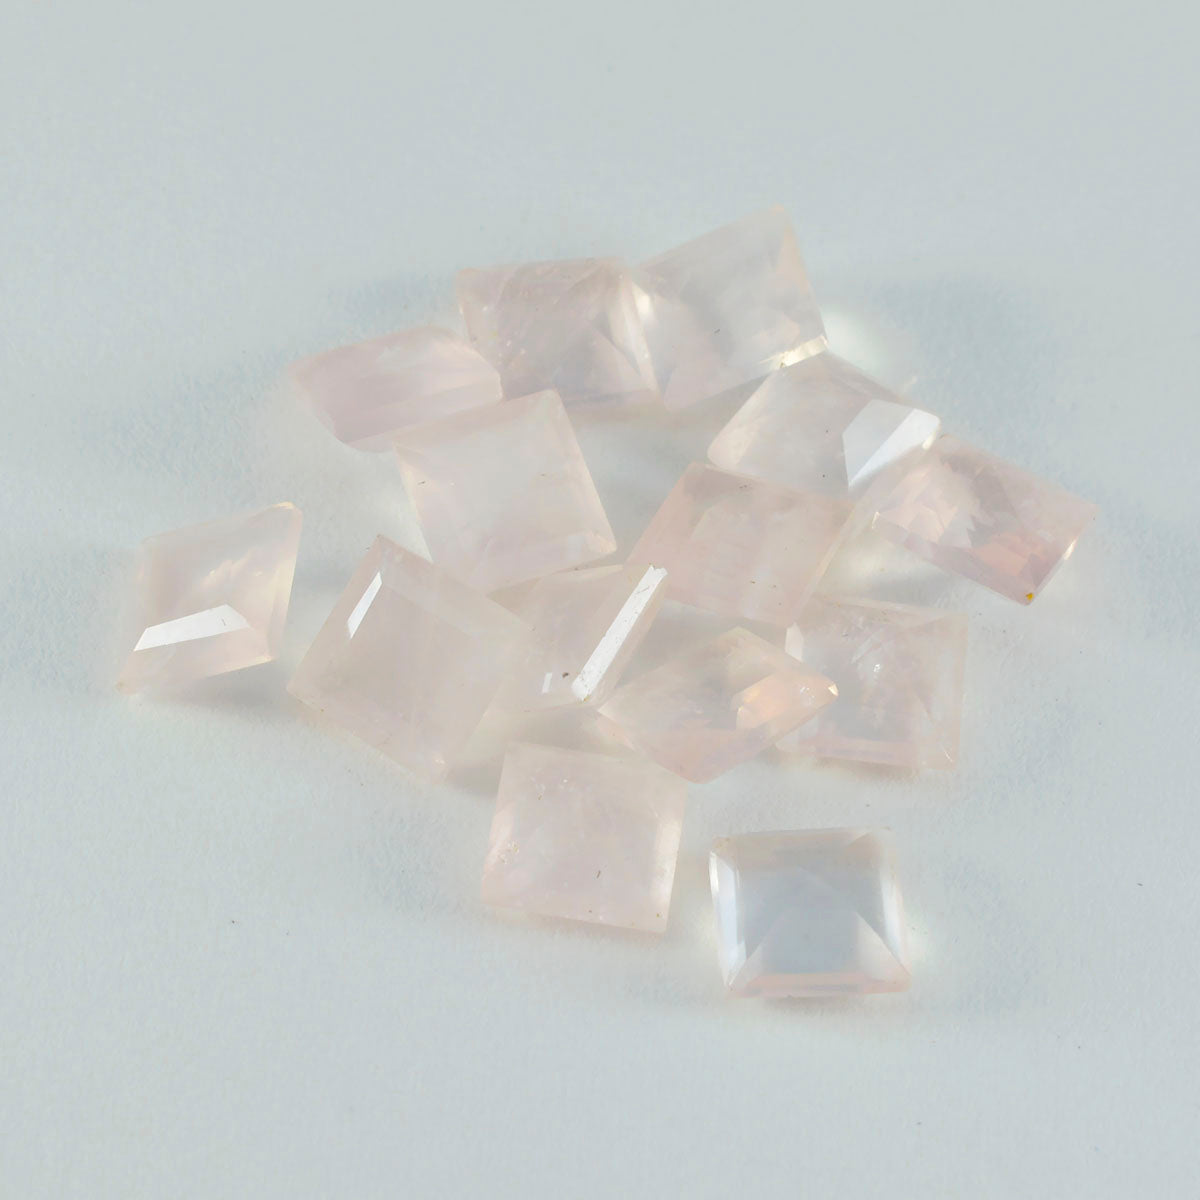 riyogems 1 шт. розовый кварц ограненный 4x4 мм квадратной формы довольно качественный свободный камень